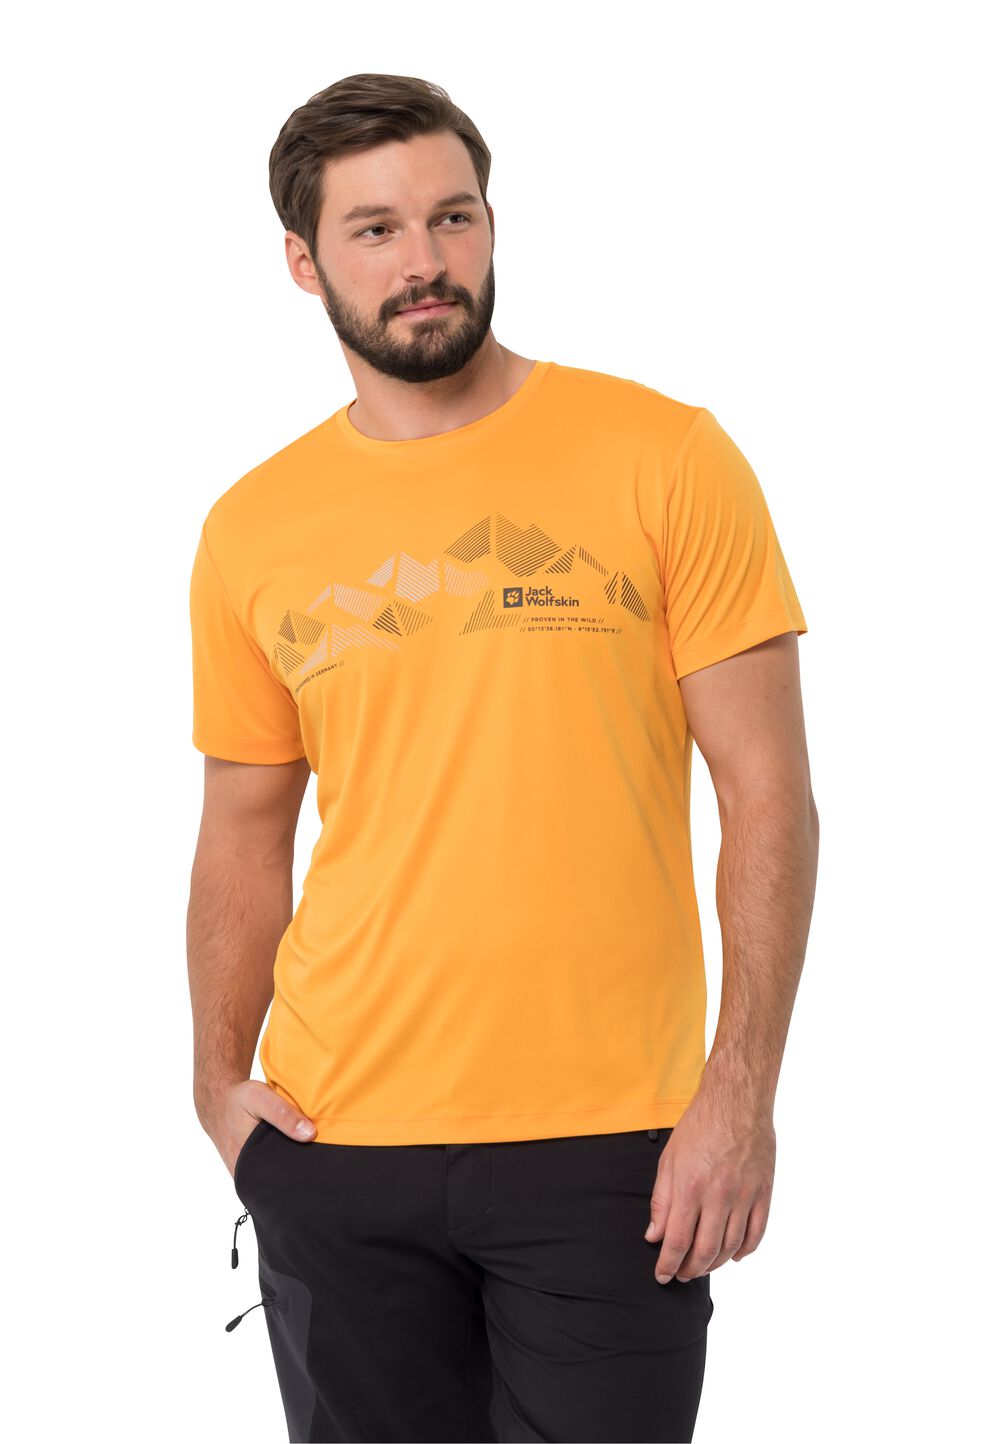 Jack Wolfskin Funktionsshirt Herren Peak Graphic T-Shirt Men L braun orange pop von Jack Wolfskin